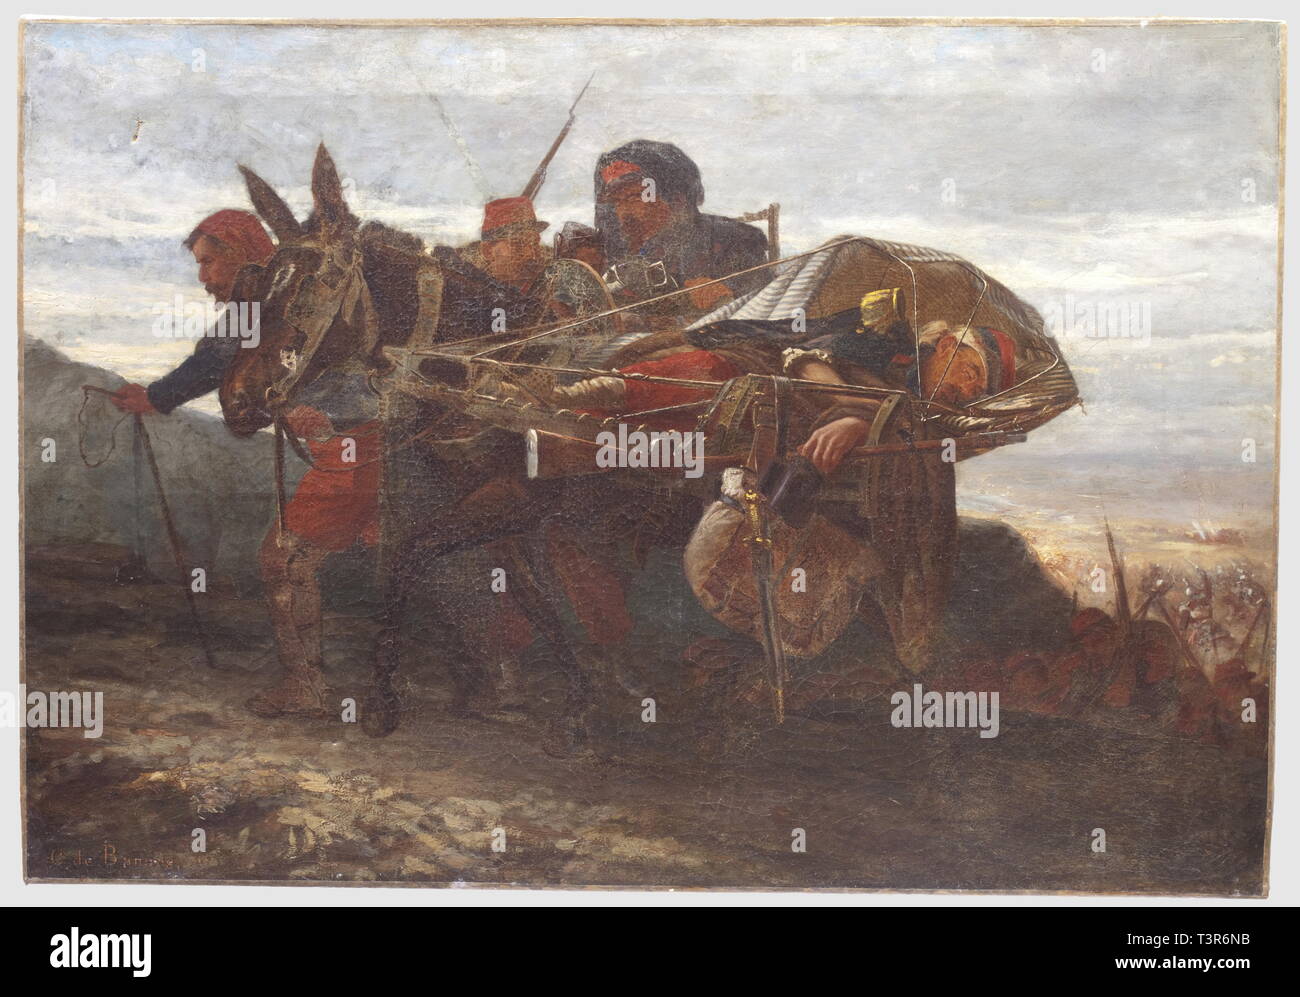 SECONDE REPUBLIQUE ET Segundo Imperio, 1848-1870 signée Huile sur toile du  peintre C. de Bannes, représentant une scène de combate en 1870. Au plan  premier, ONU zouave suivi d'un fantassin, conducto une